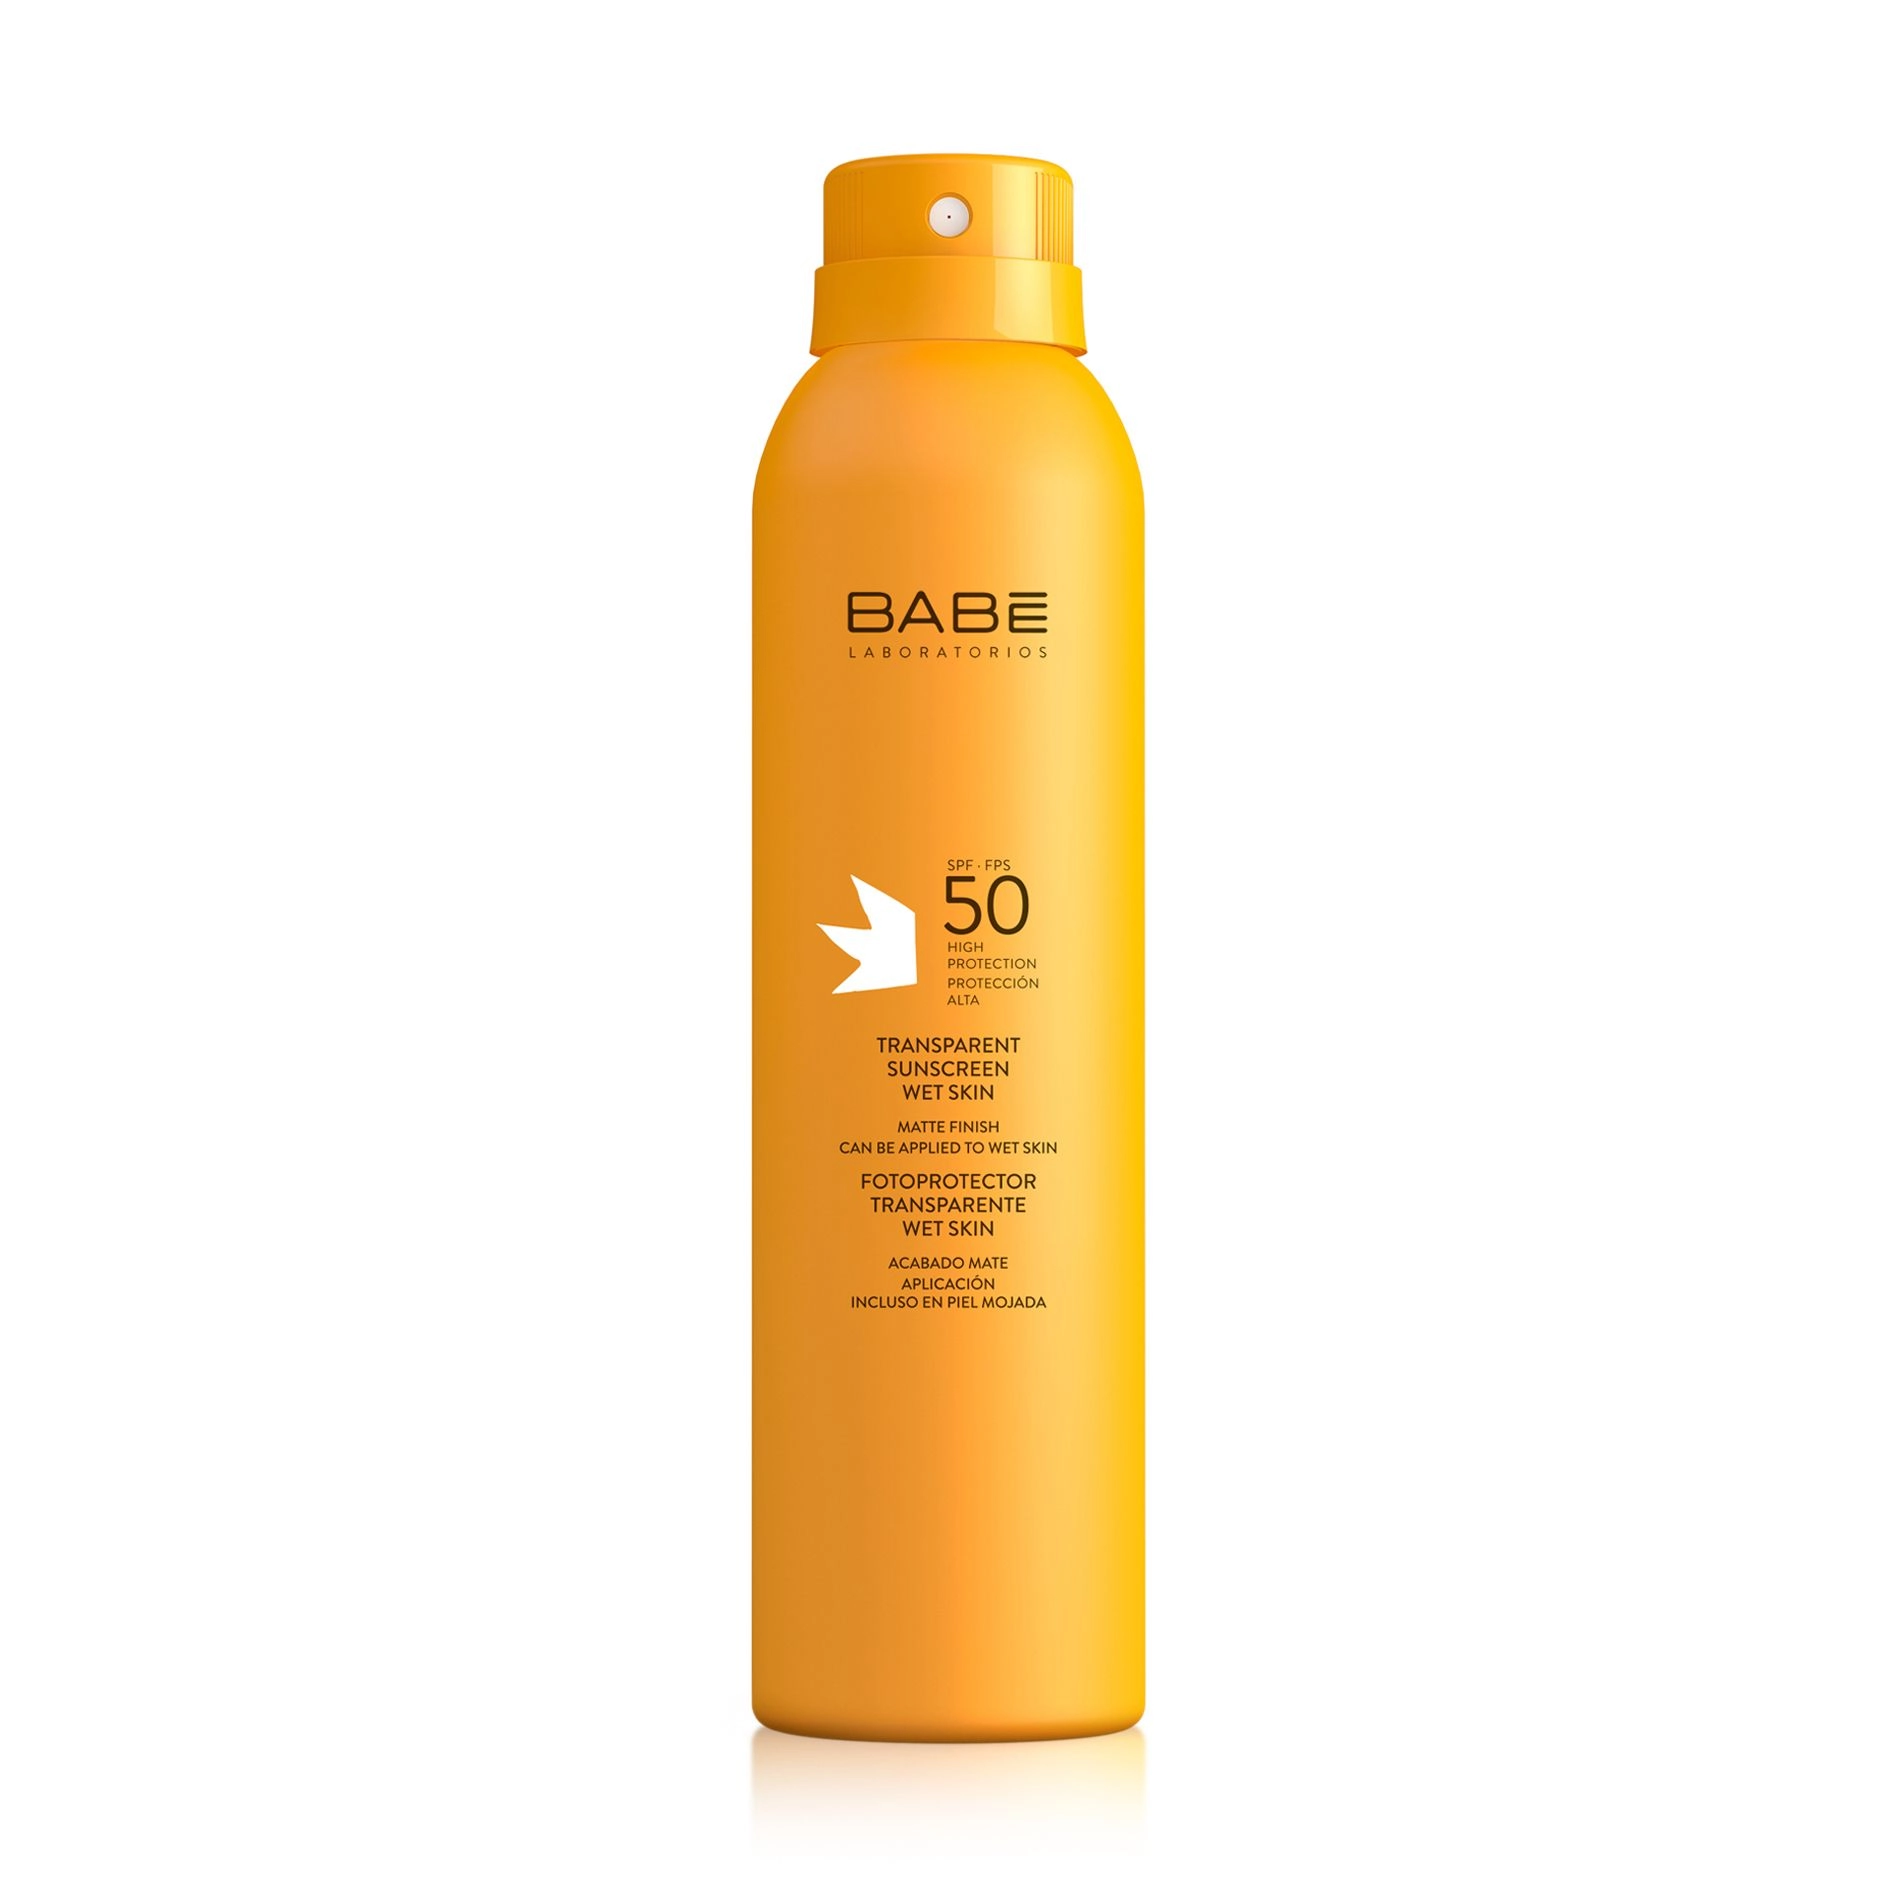 Увляжняющий прозрачный солнцезащитный спрей с SPF 50 и матирующим эффектом - BABE Laboratorios Transparent Sunscreen Wet Skin SPF 50, 200 мл - фото N3